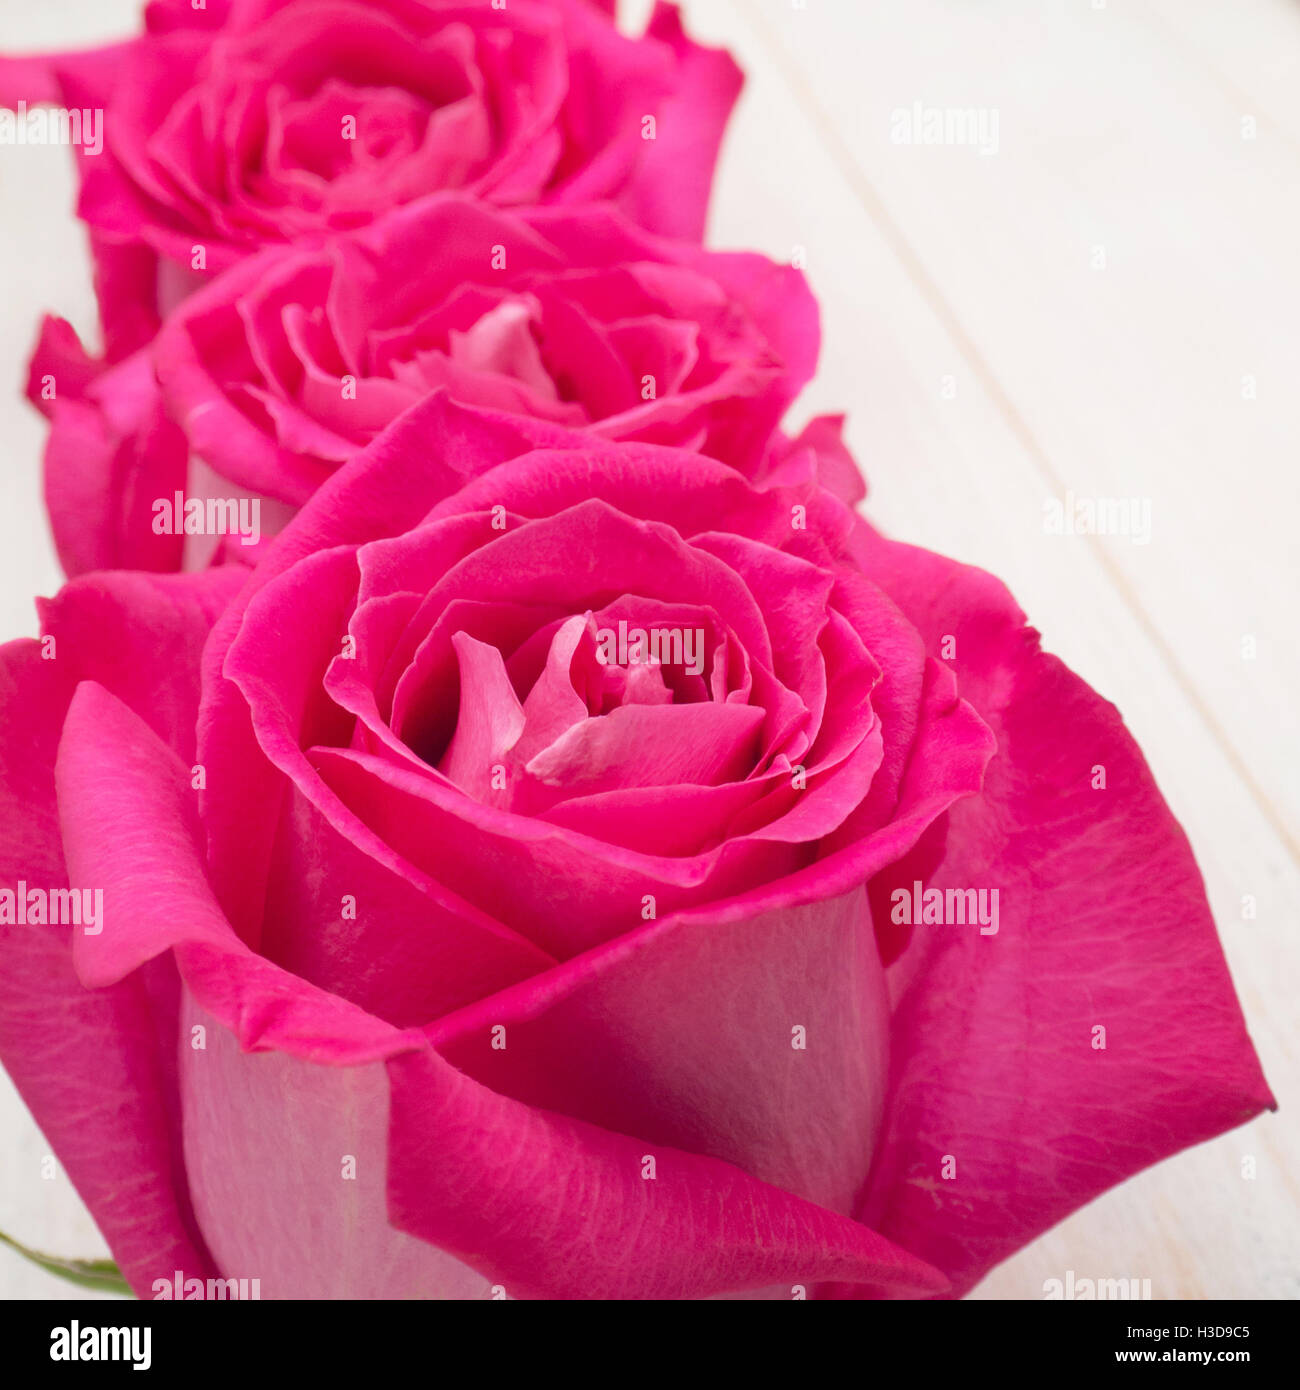 Pink hybrid tea roses closeup Stock Photo